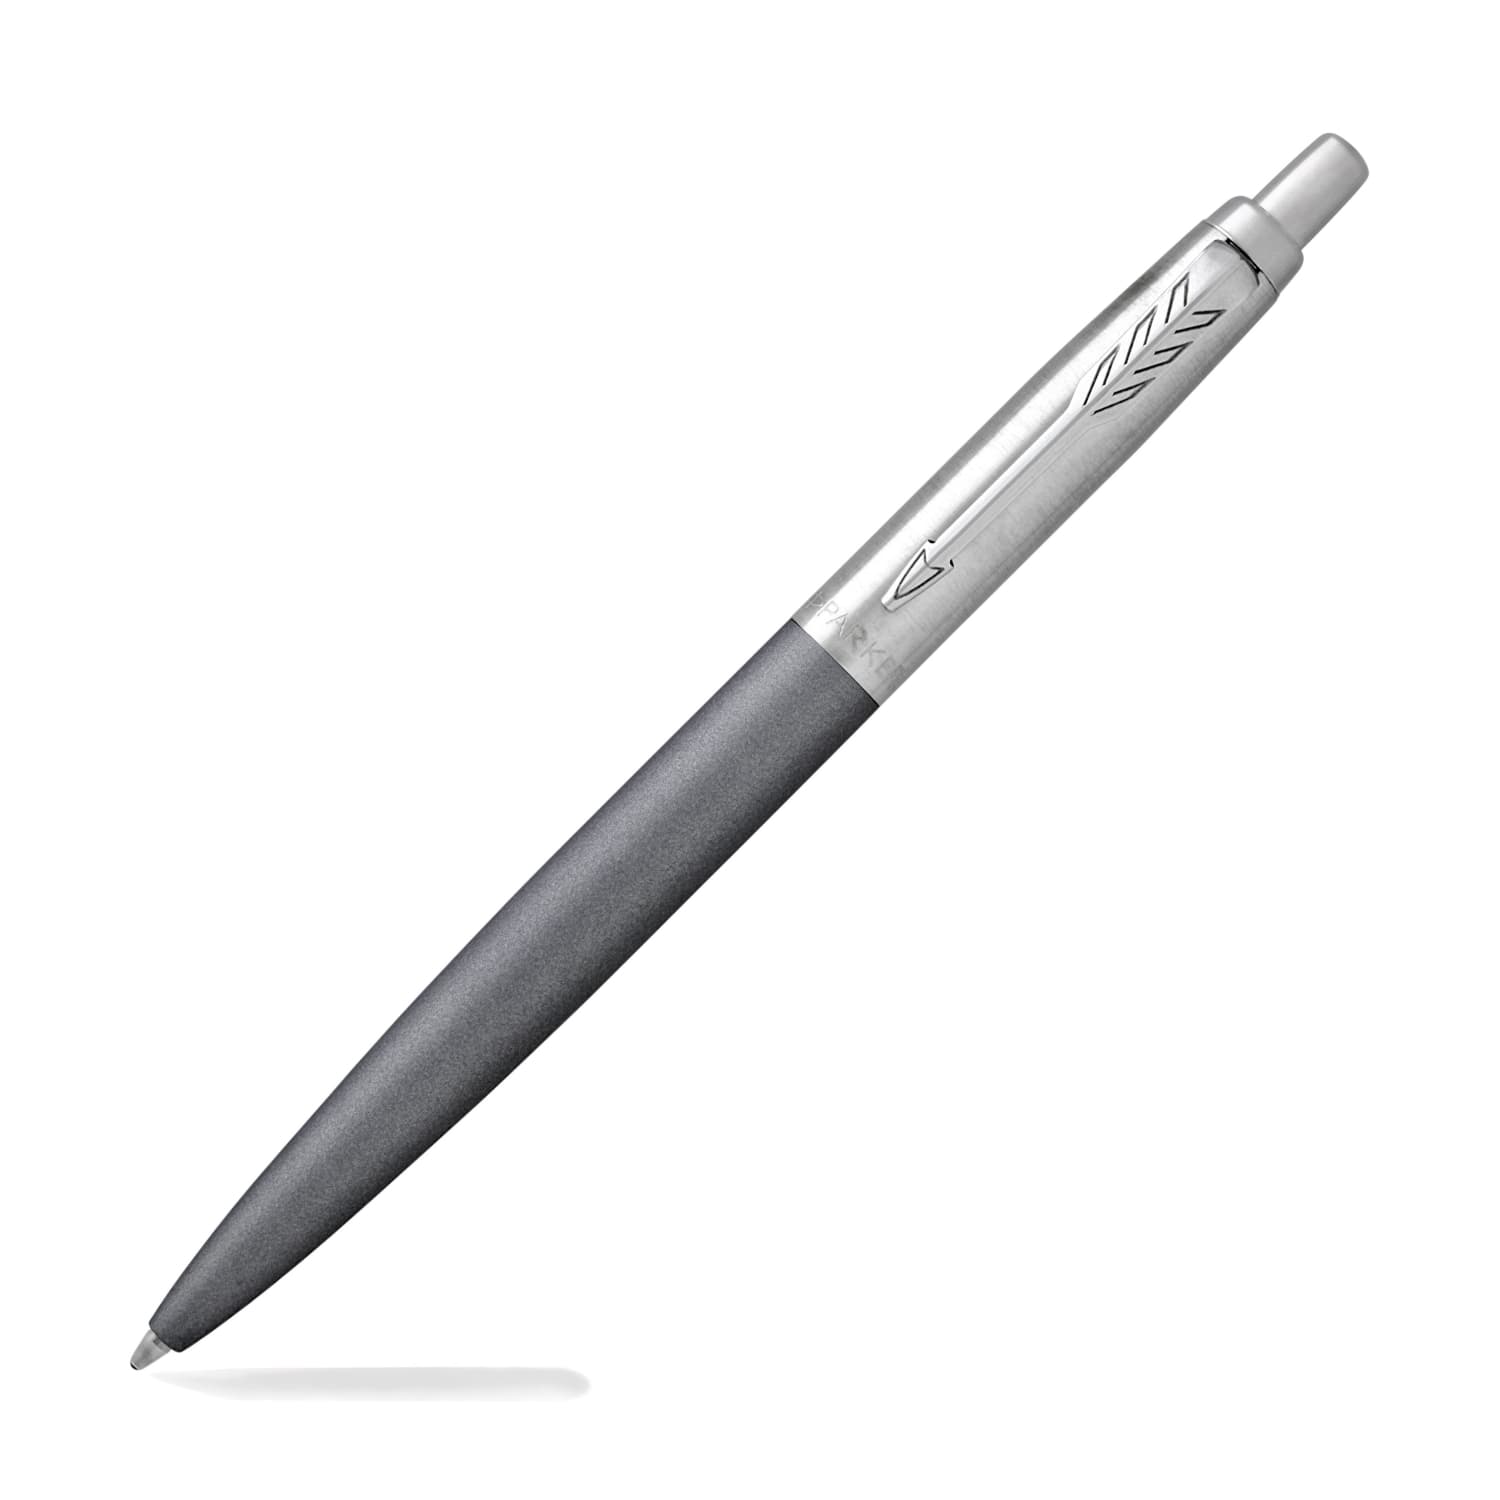 Best Luxury Ballpoint Pens of 2023 - Goldspot Pens